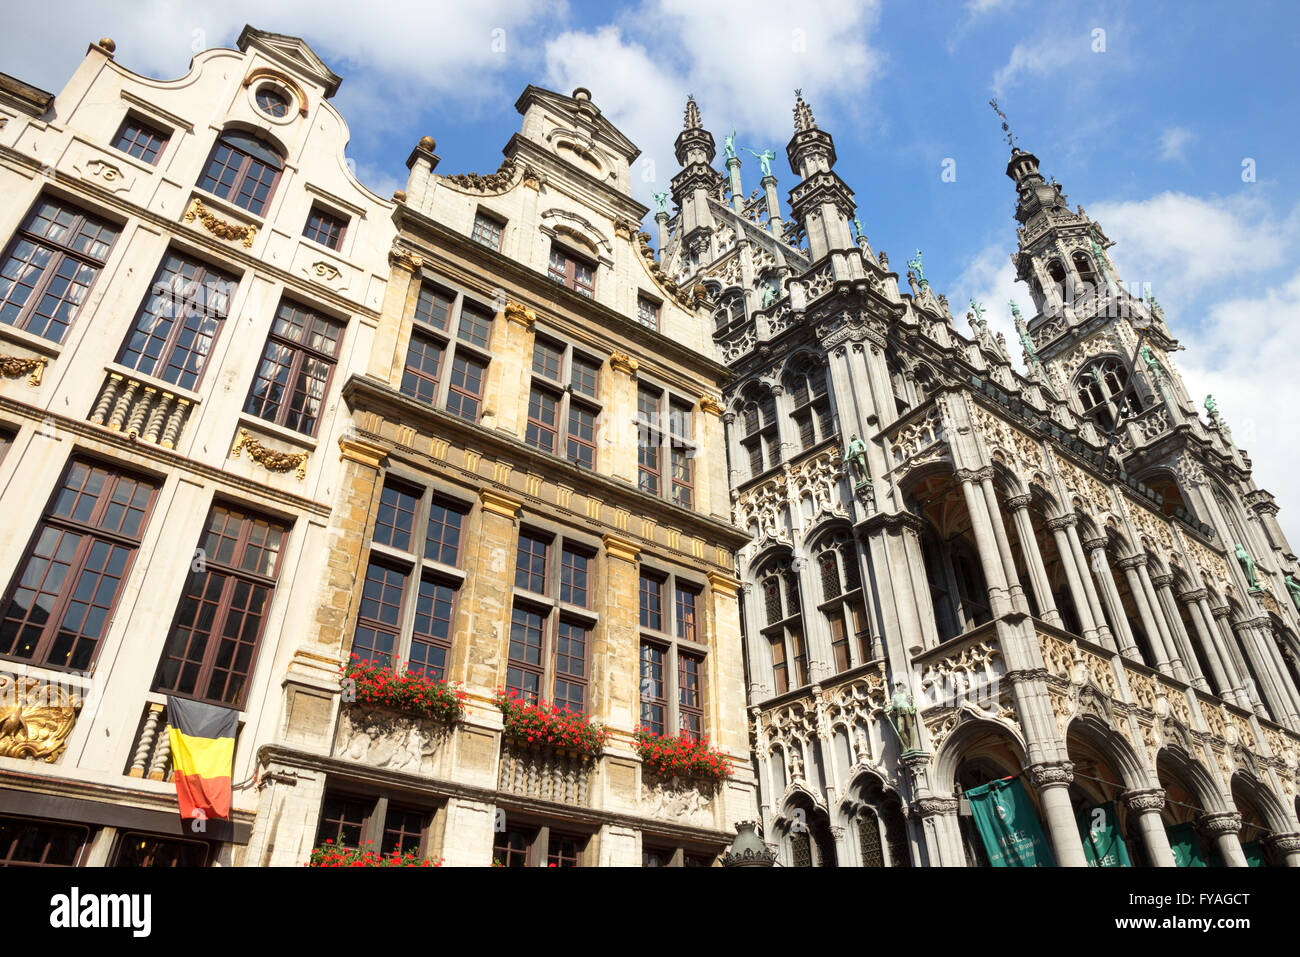 Facciate sulla famosa Grand Place (Grote Markt) - la piazza centrale di Bruxelles. Foto Stock